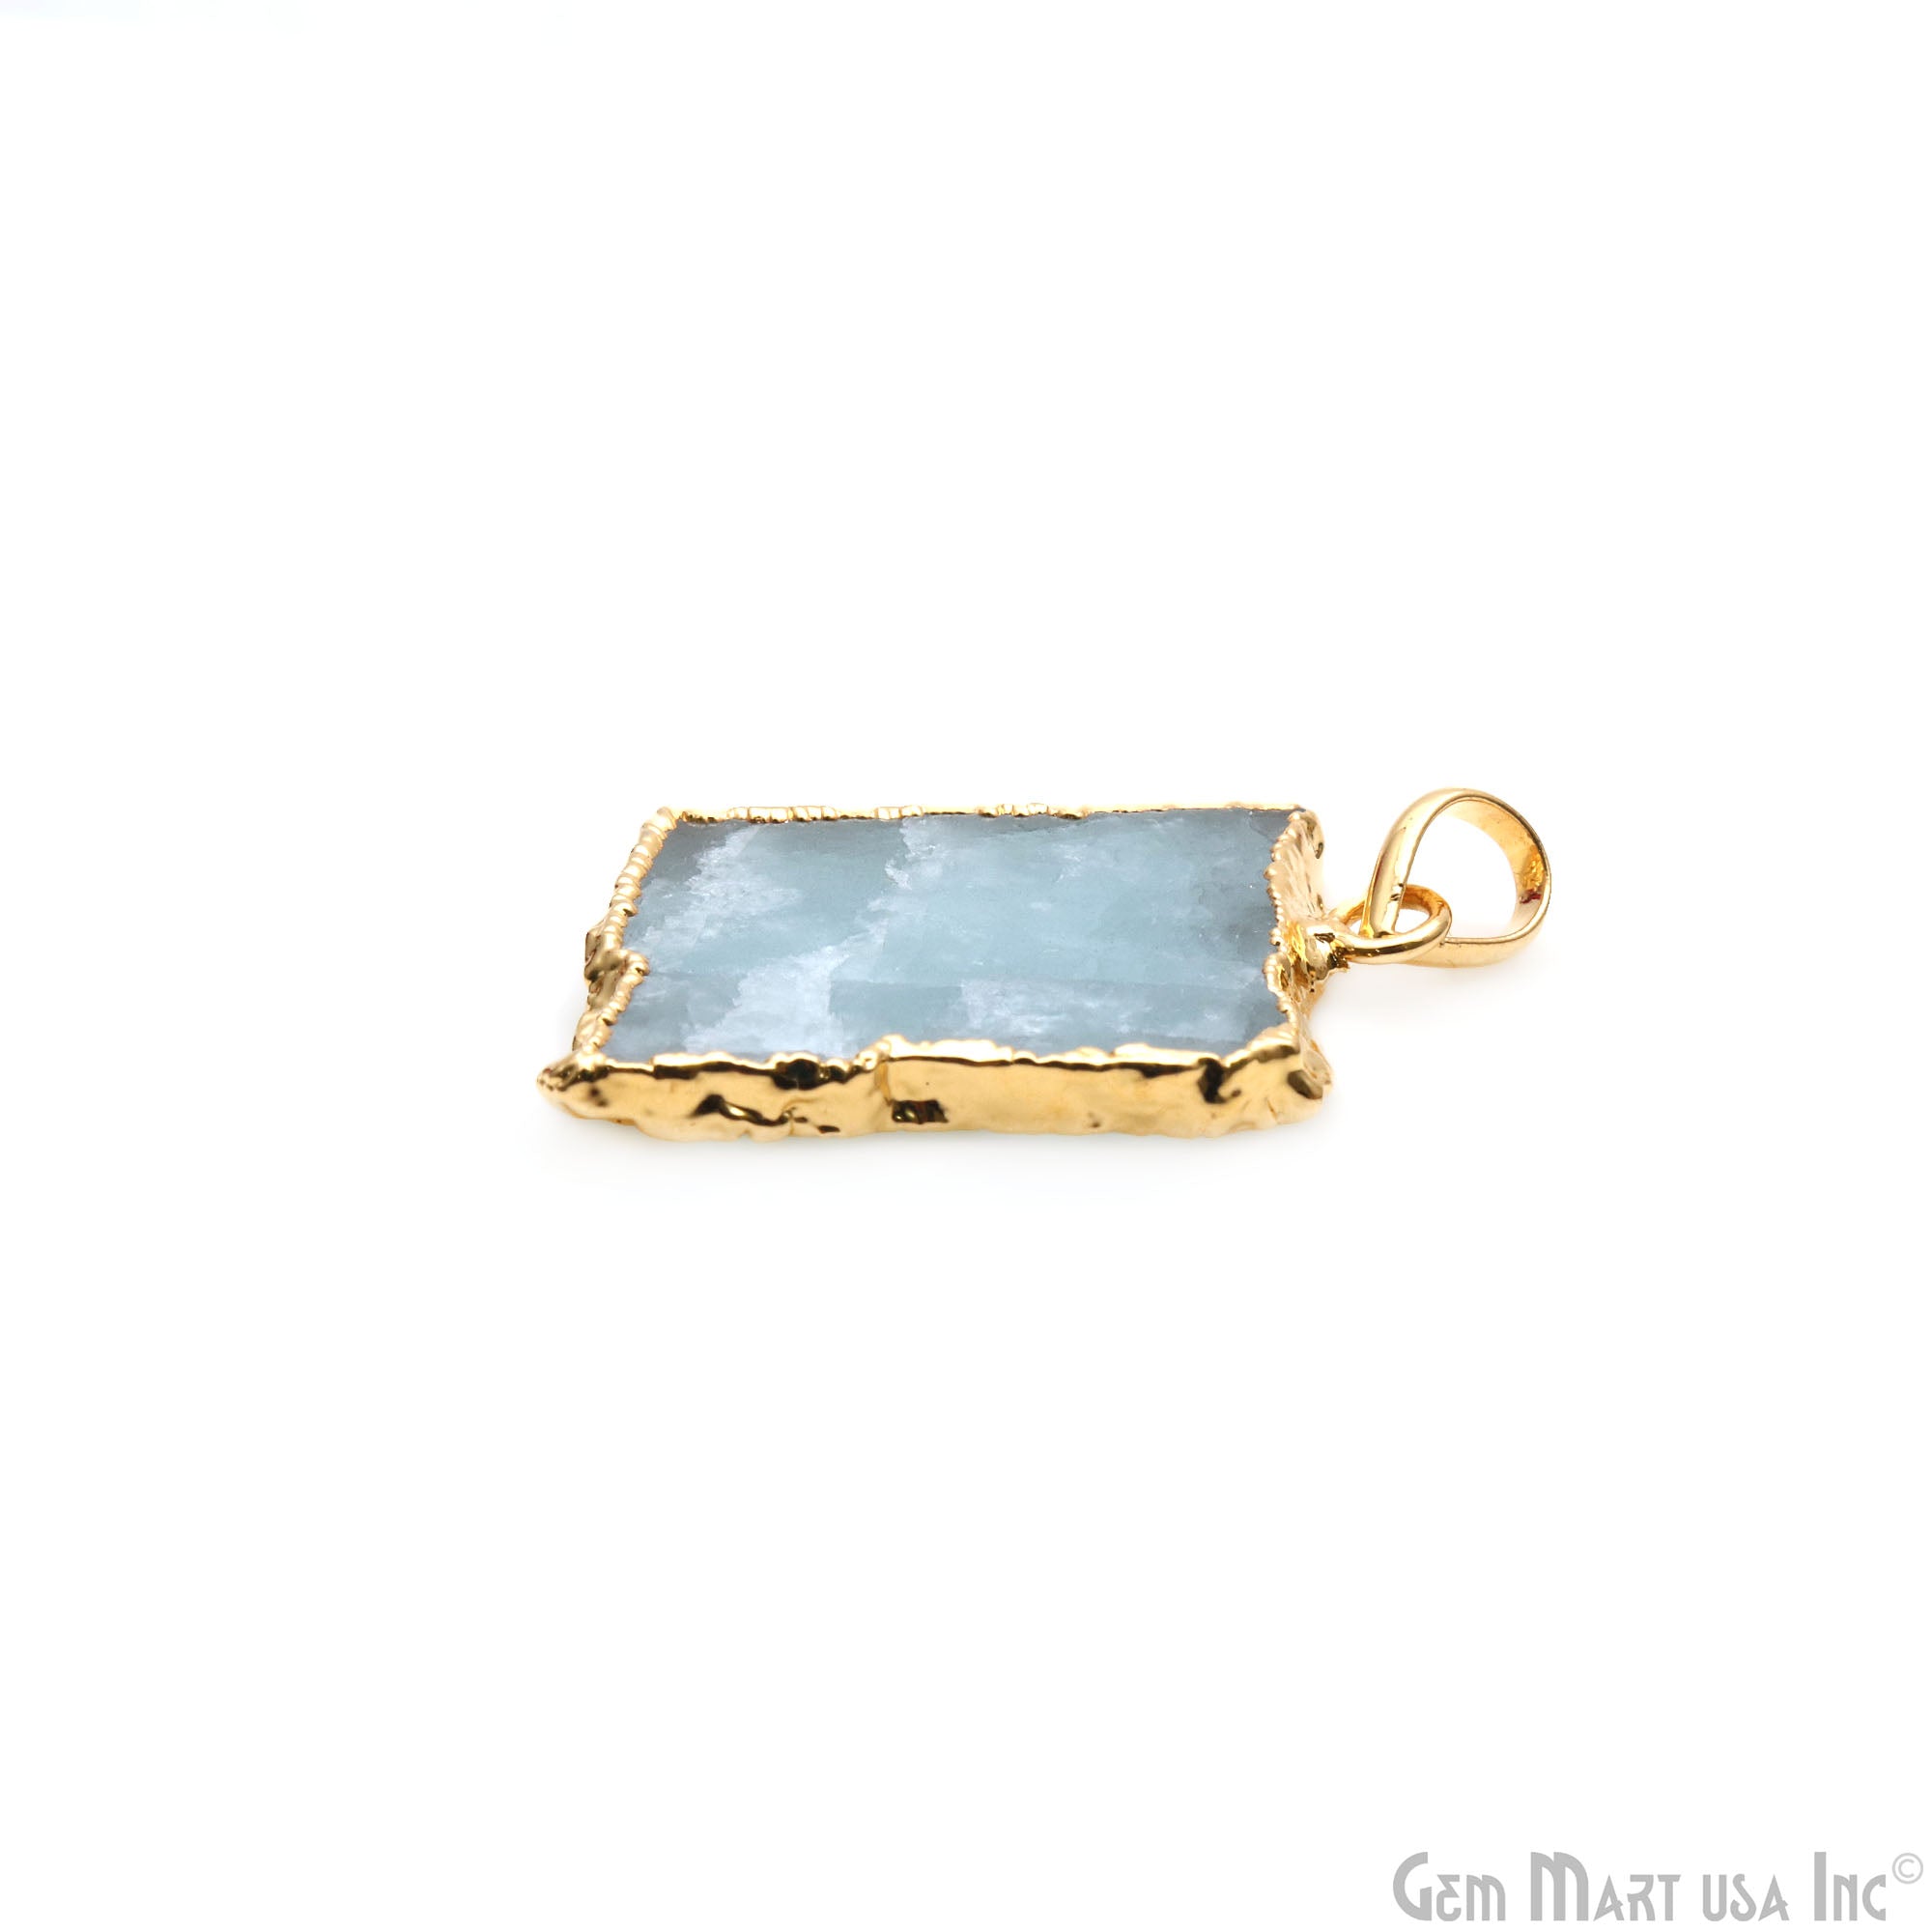 Aquamarine Free Form shape 30x20mm Gold Electroplated Gemstone Single Bail Pendant